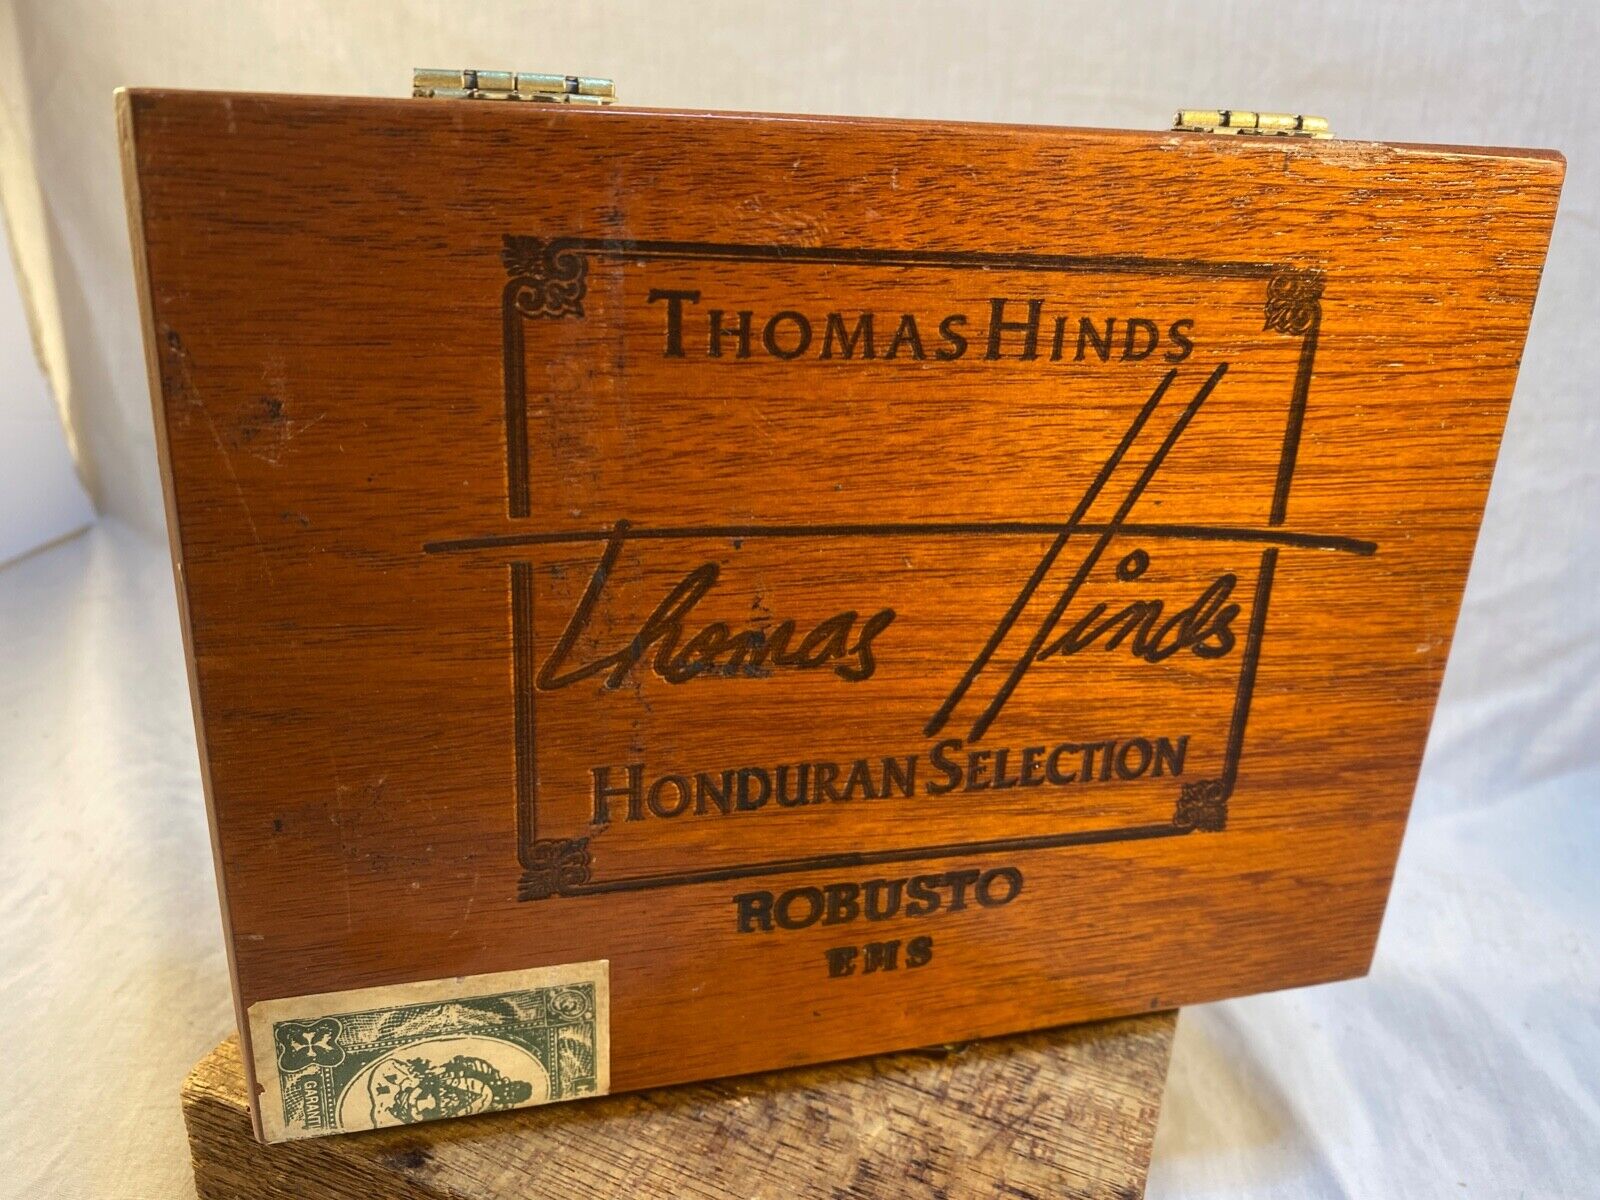 Thomas Hinds cigar box